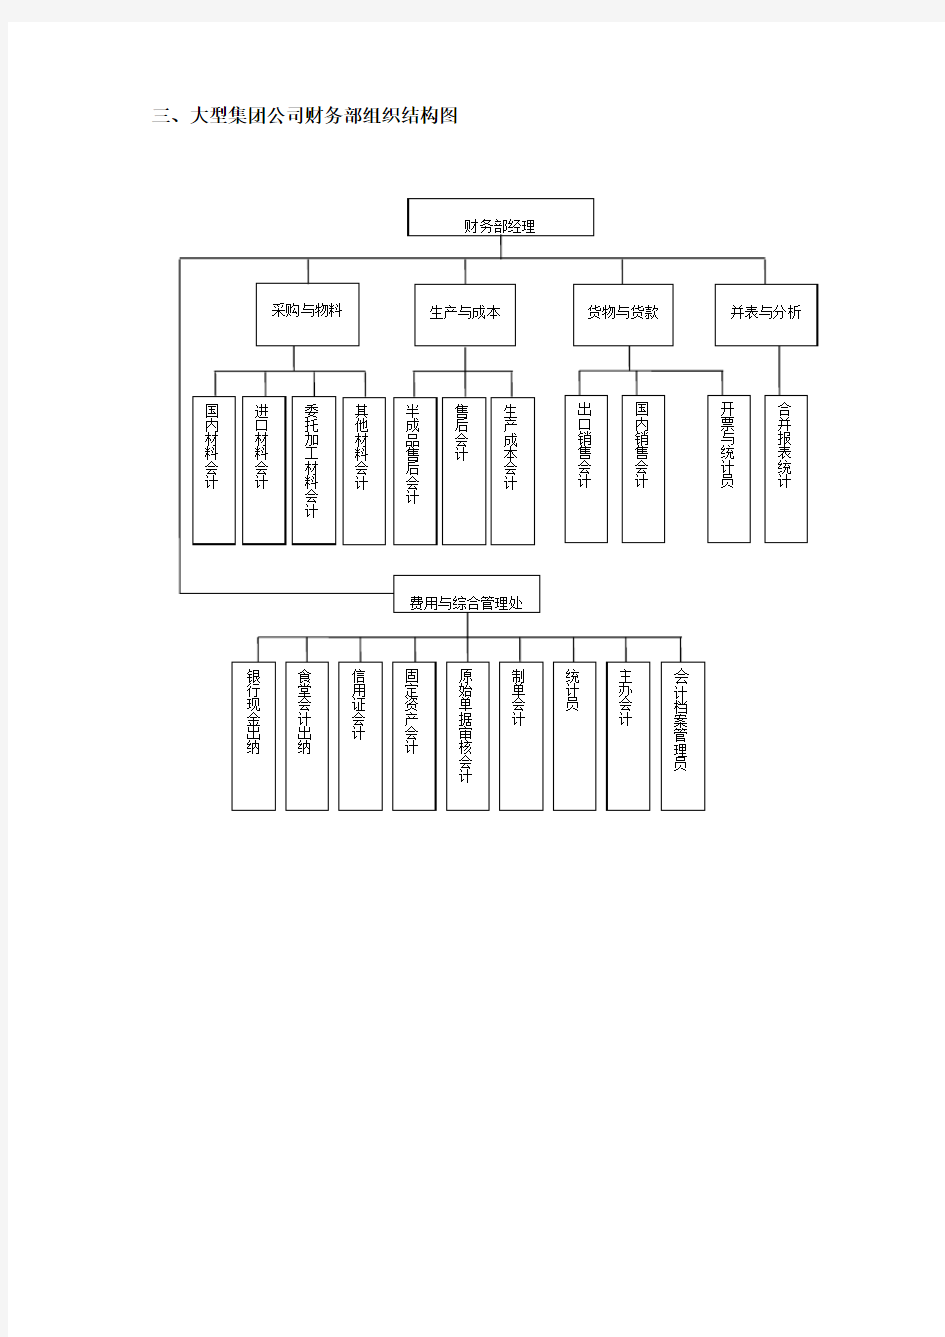 财务部门组织架构图